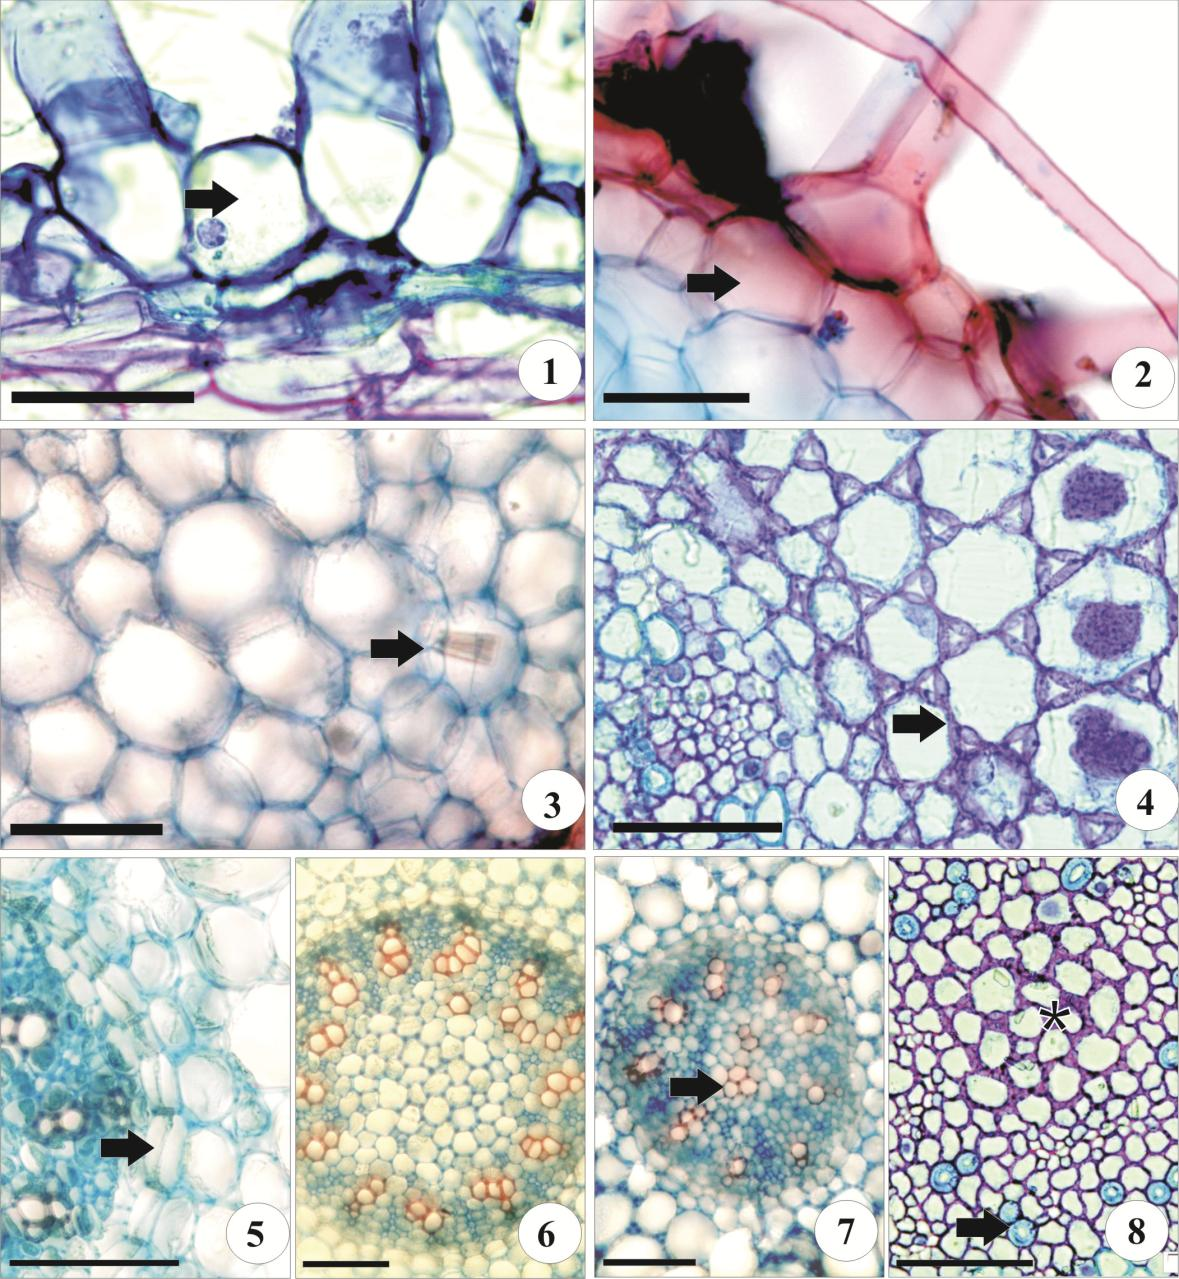 164 61: 1-8 Secções transversais da raiz de espécies de Goodyerinae (1). Aspidogyne rosea epiderme uniestratificada com células vivas (seta) (2). A. rosea, exoderne (seta) (3).